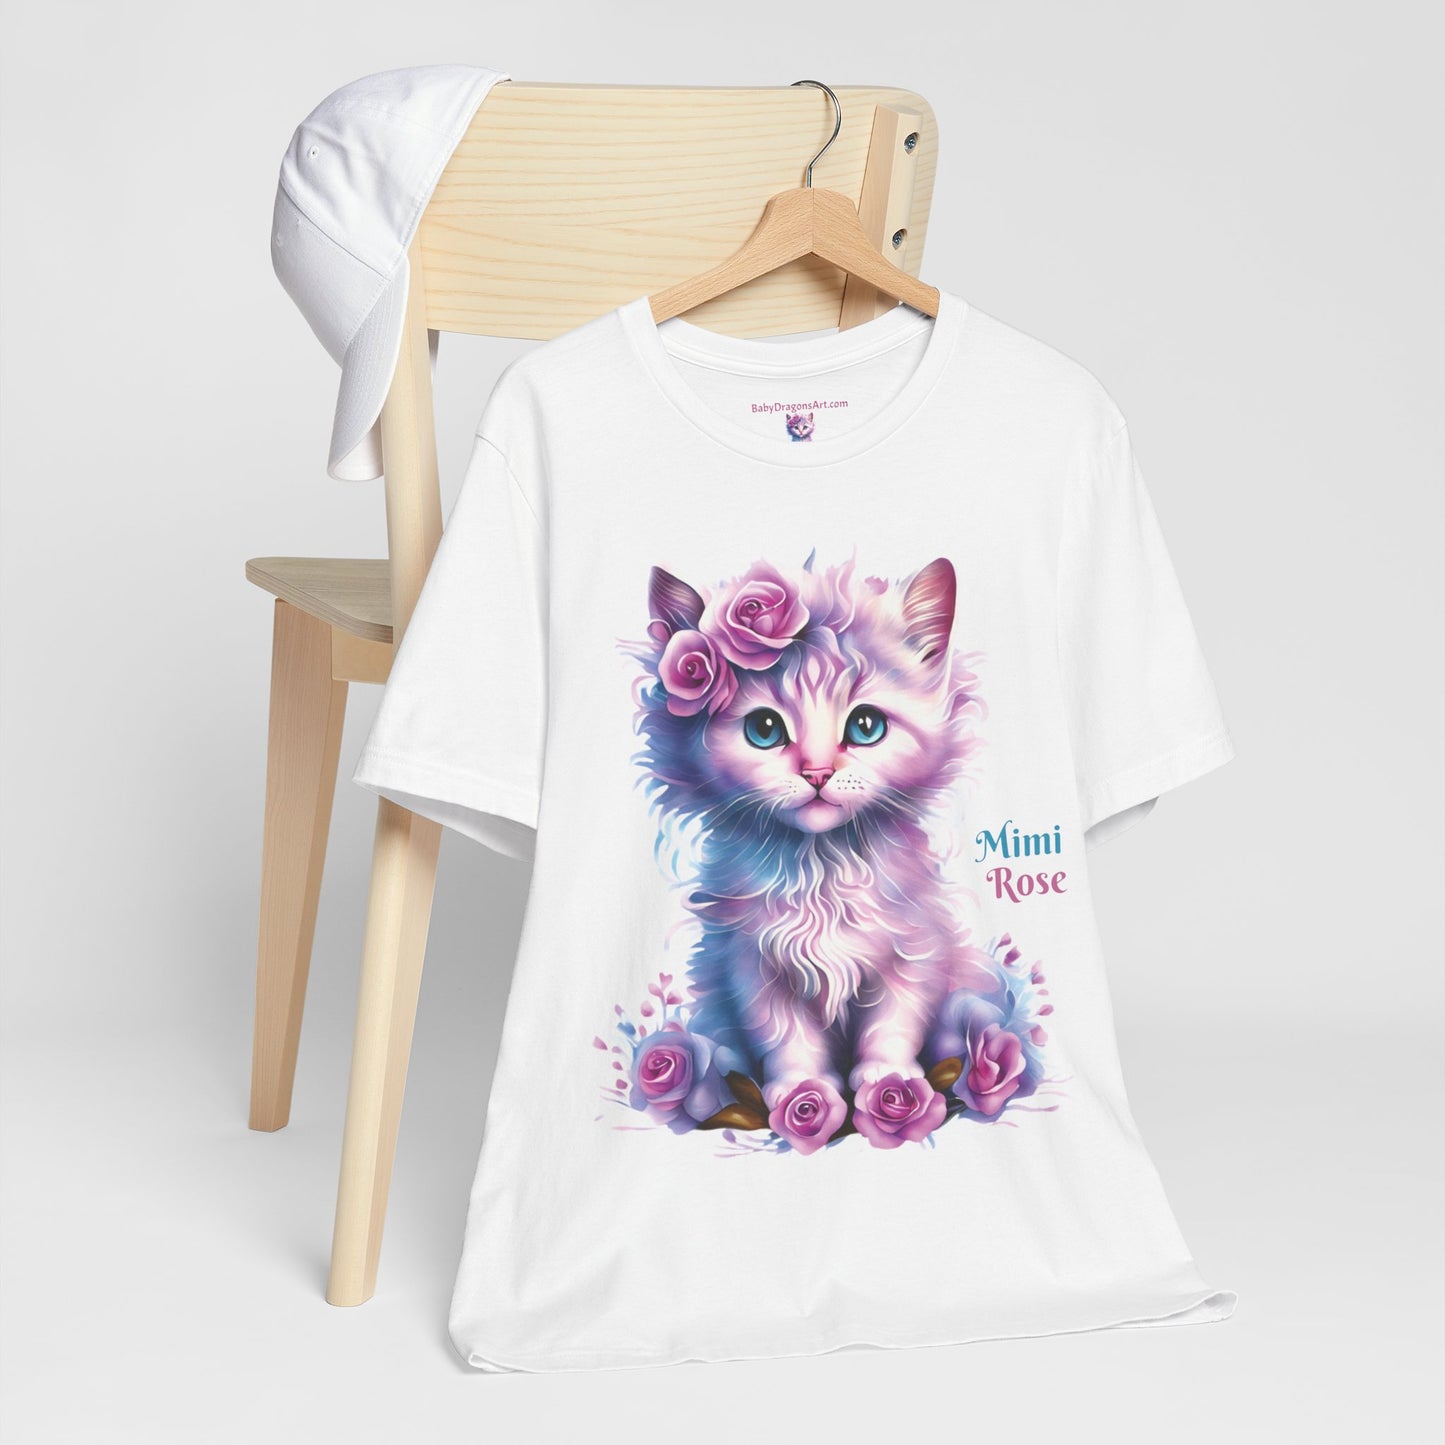 Mimi Rose Kitty Jersey Short Sleeve Tee - Best Kitty Lover Gift